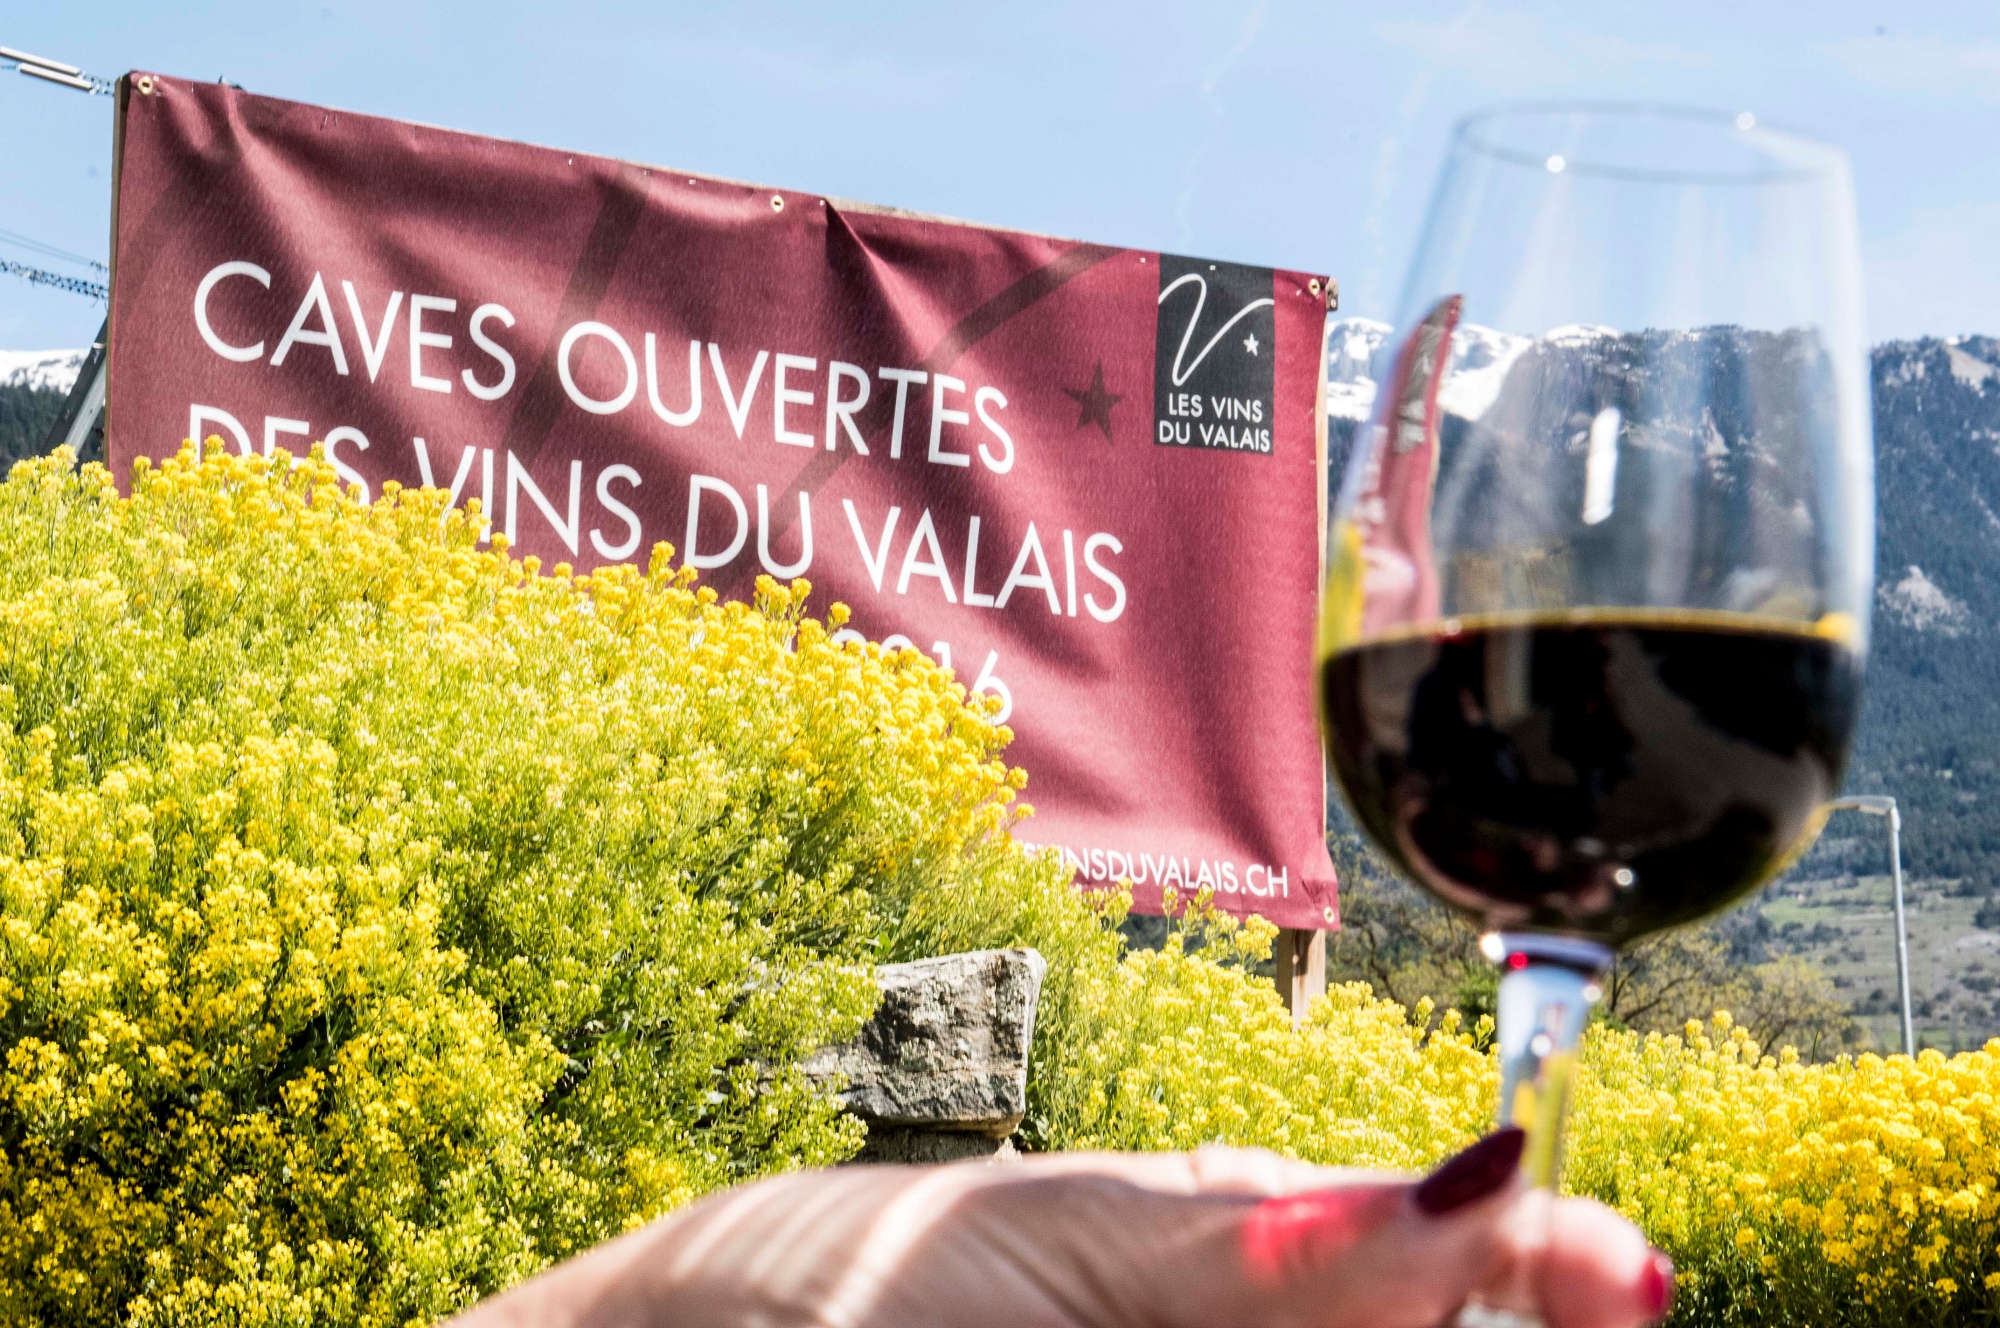 Les Caves ouvertes des vins du Valais auront lieu les 28, 29 et 30 août 2020.